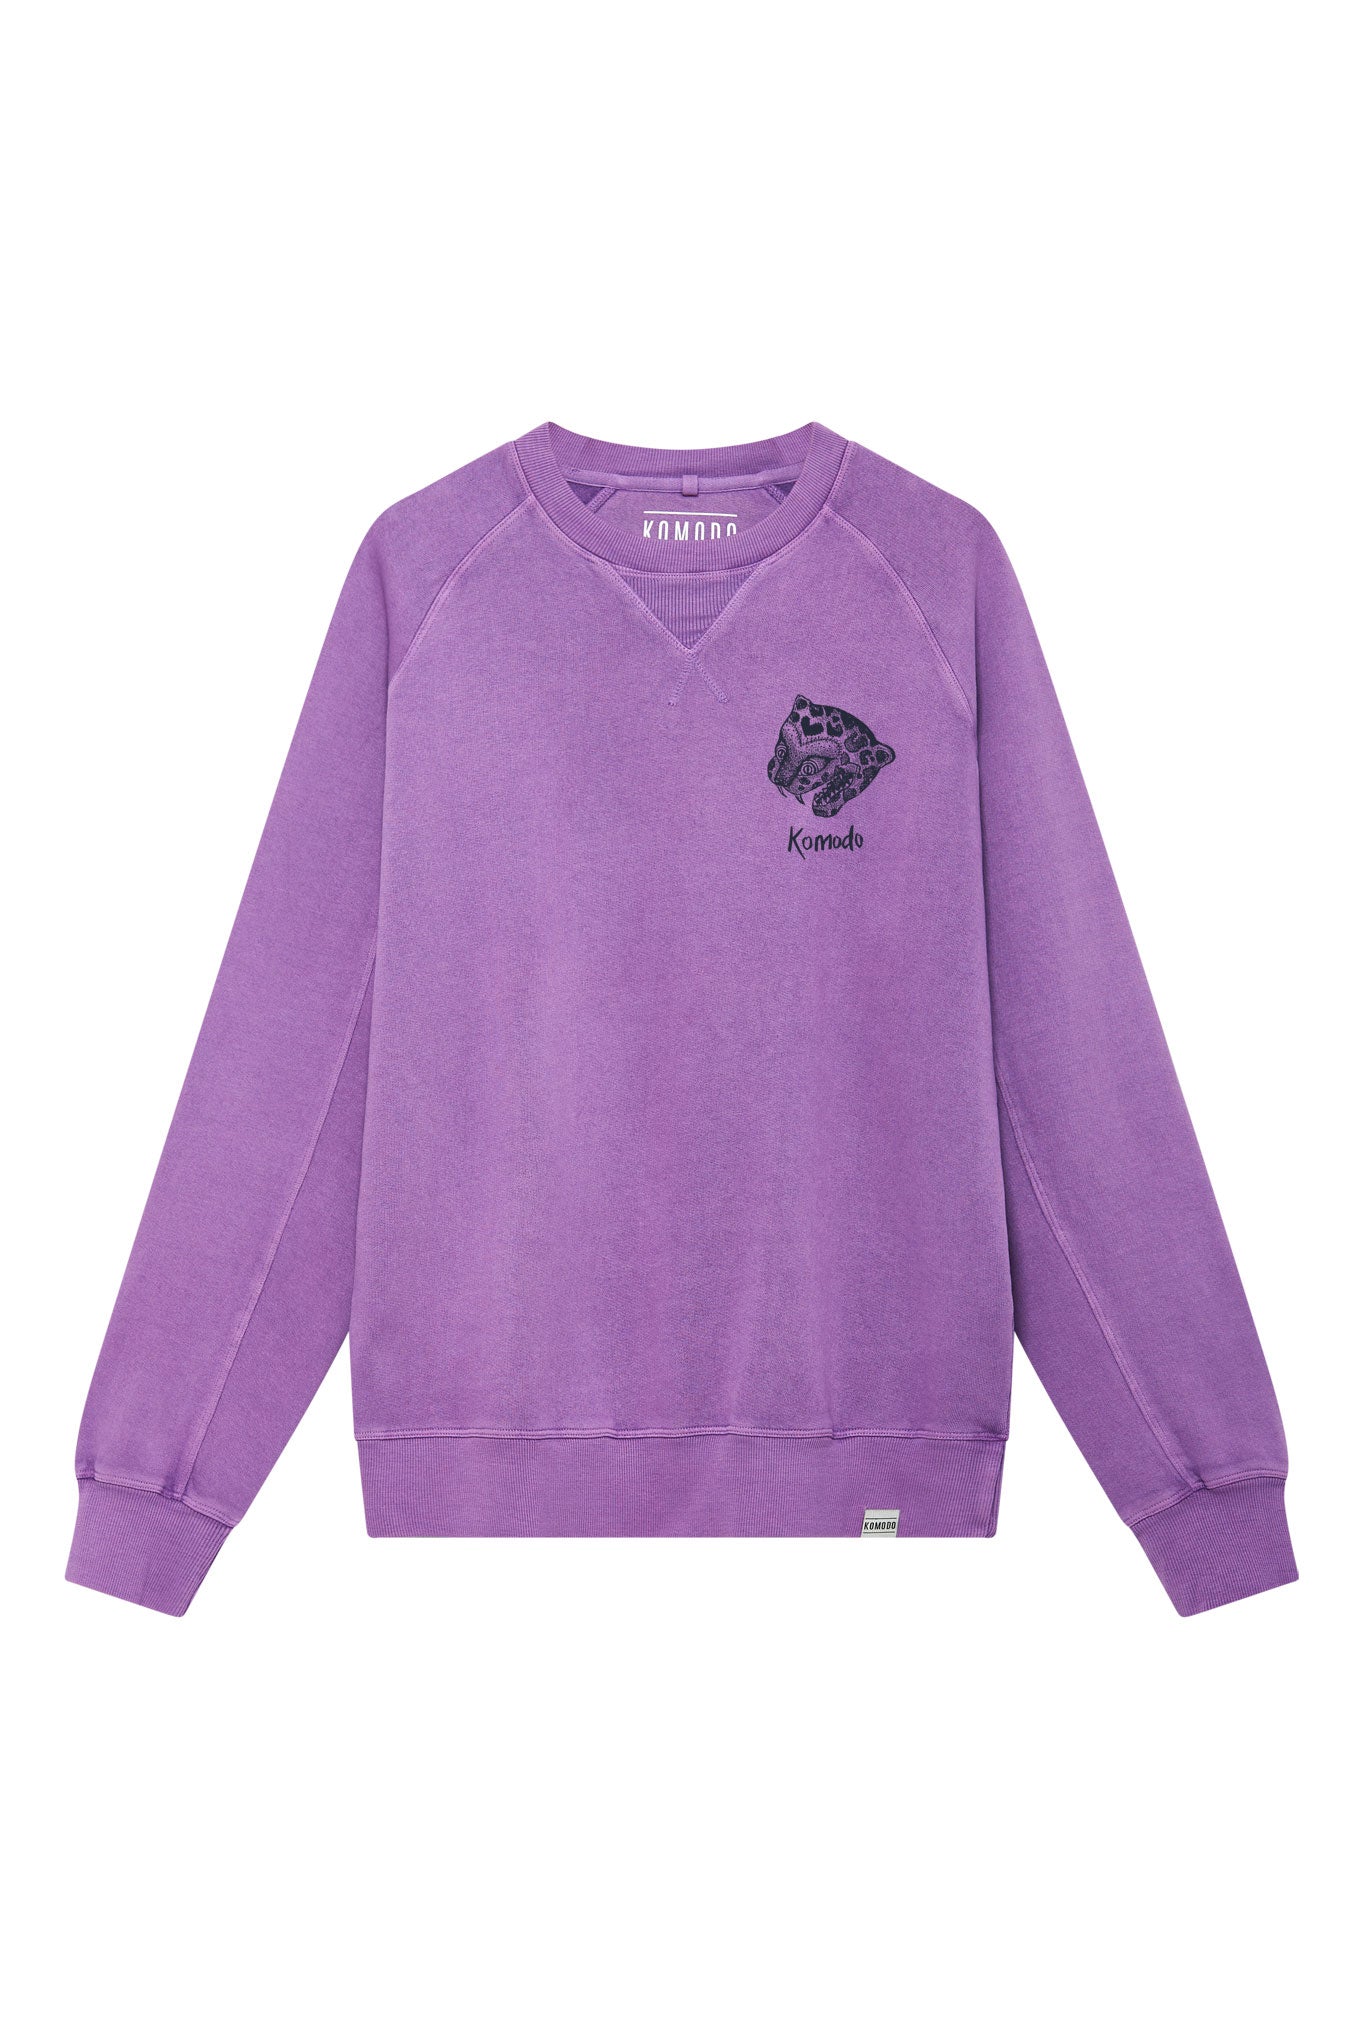 Violetter, langärmliger Sweater NEPALI LEOPARD aus 100% Bio-Baumwolle von Komodo